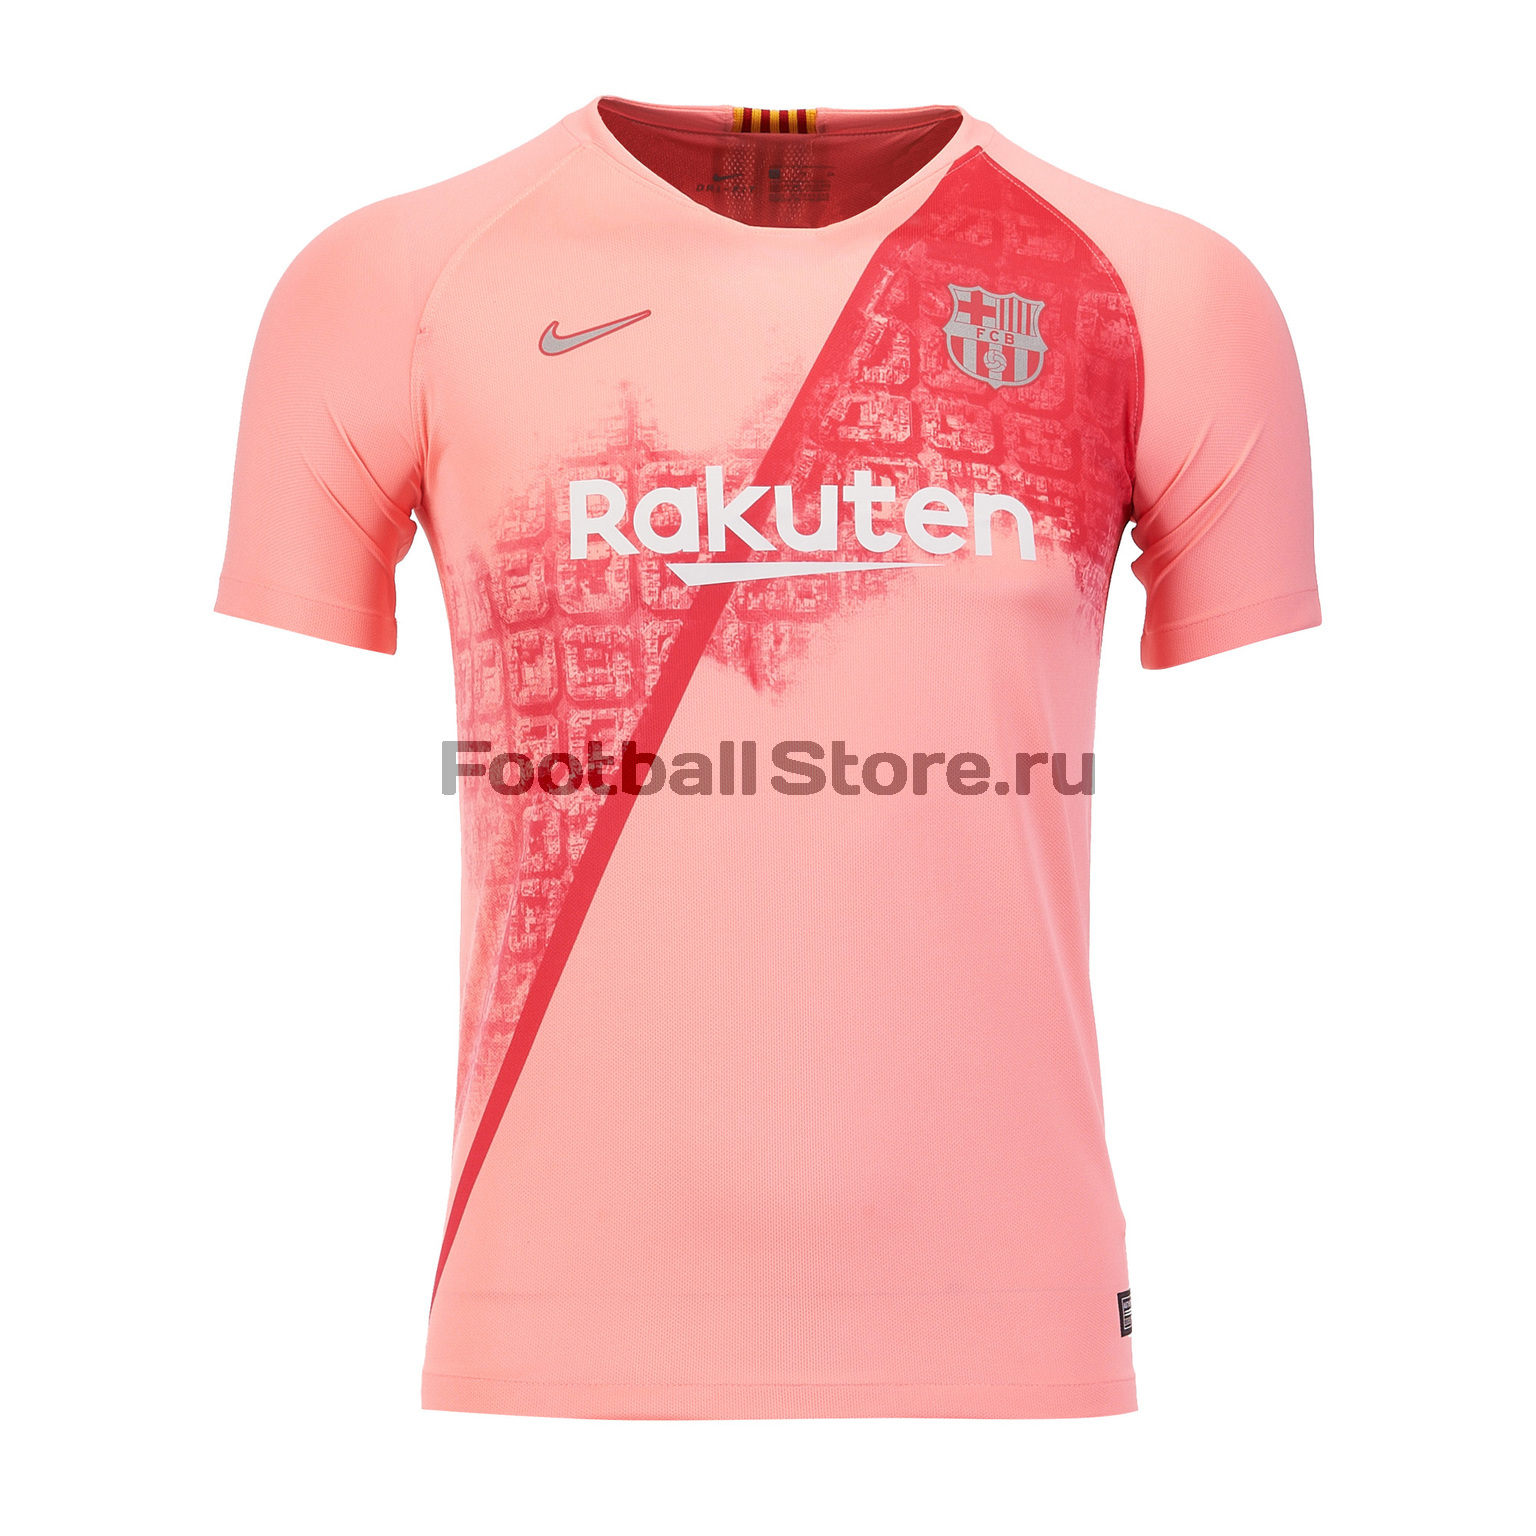 Футболка игровая резервная Nike Barcelona 2018/19